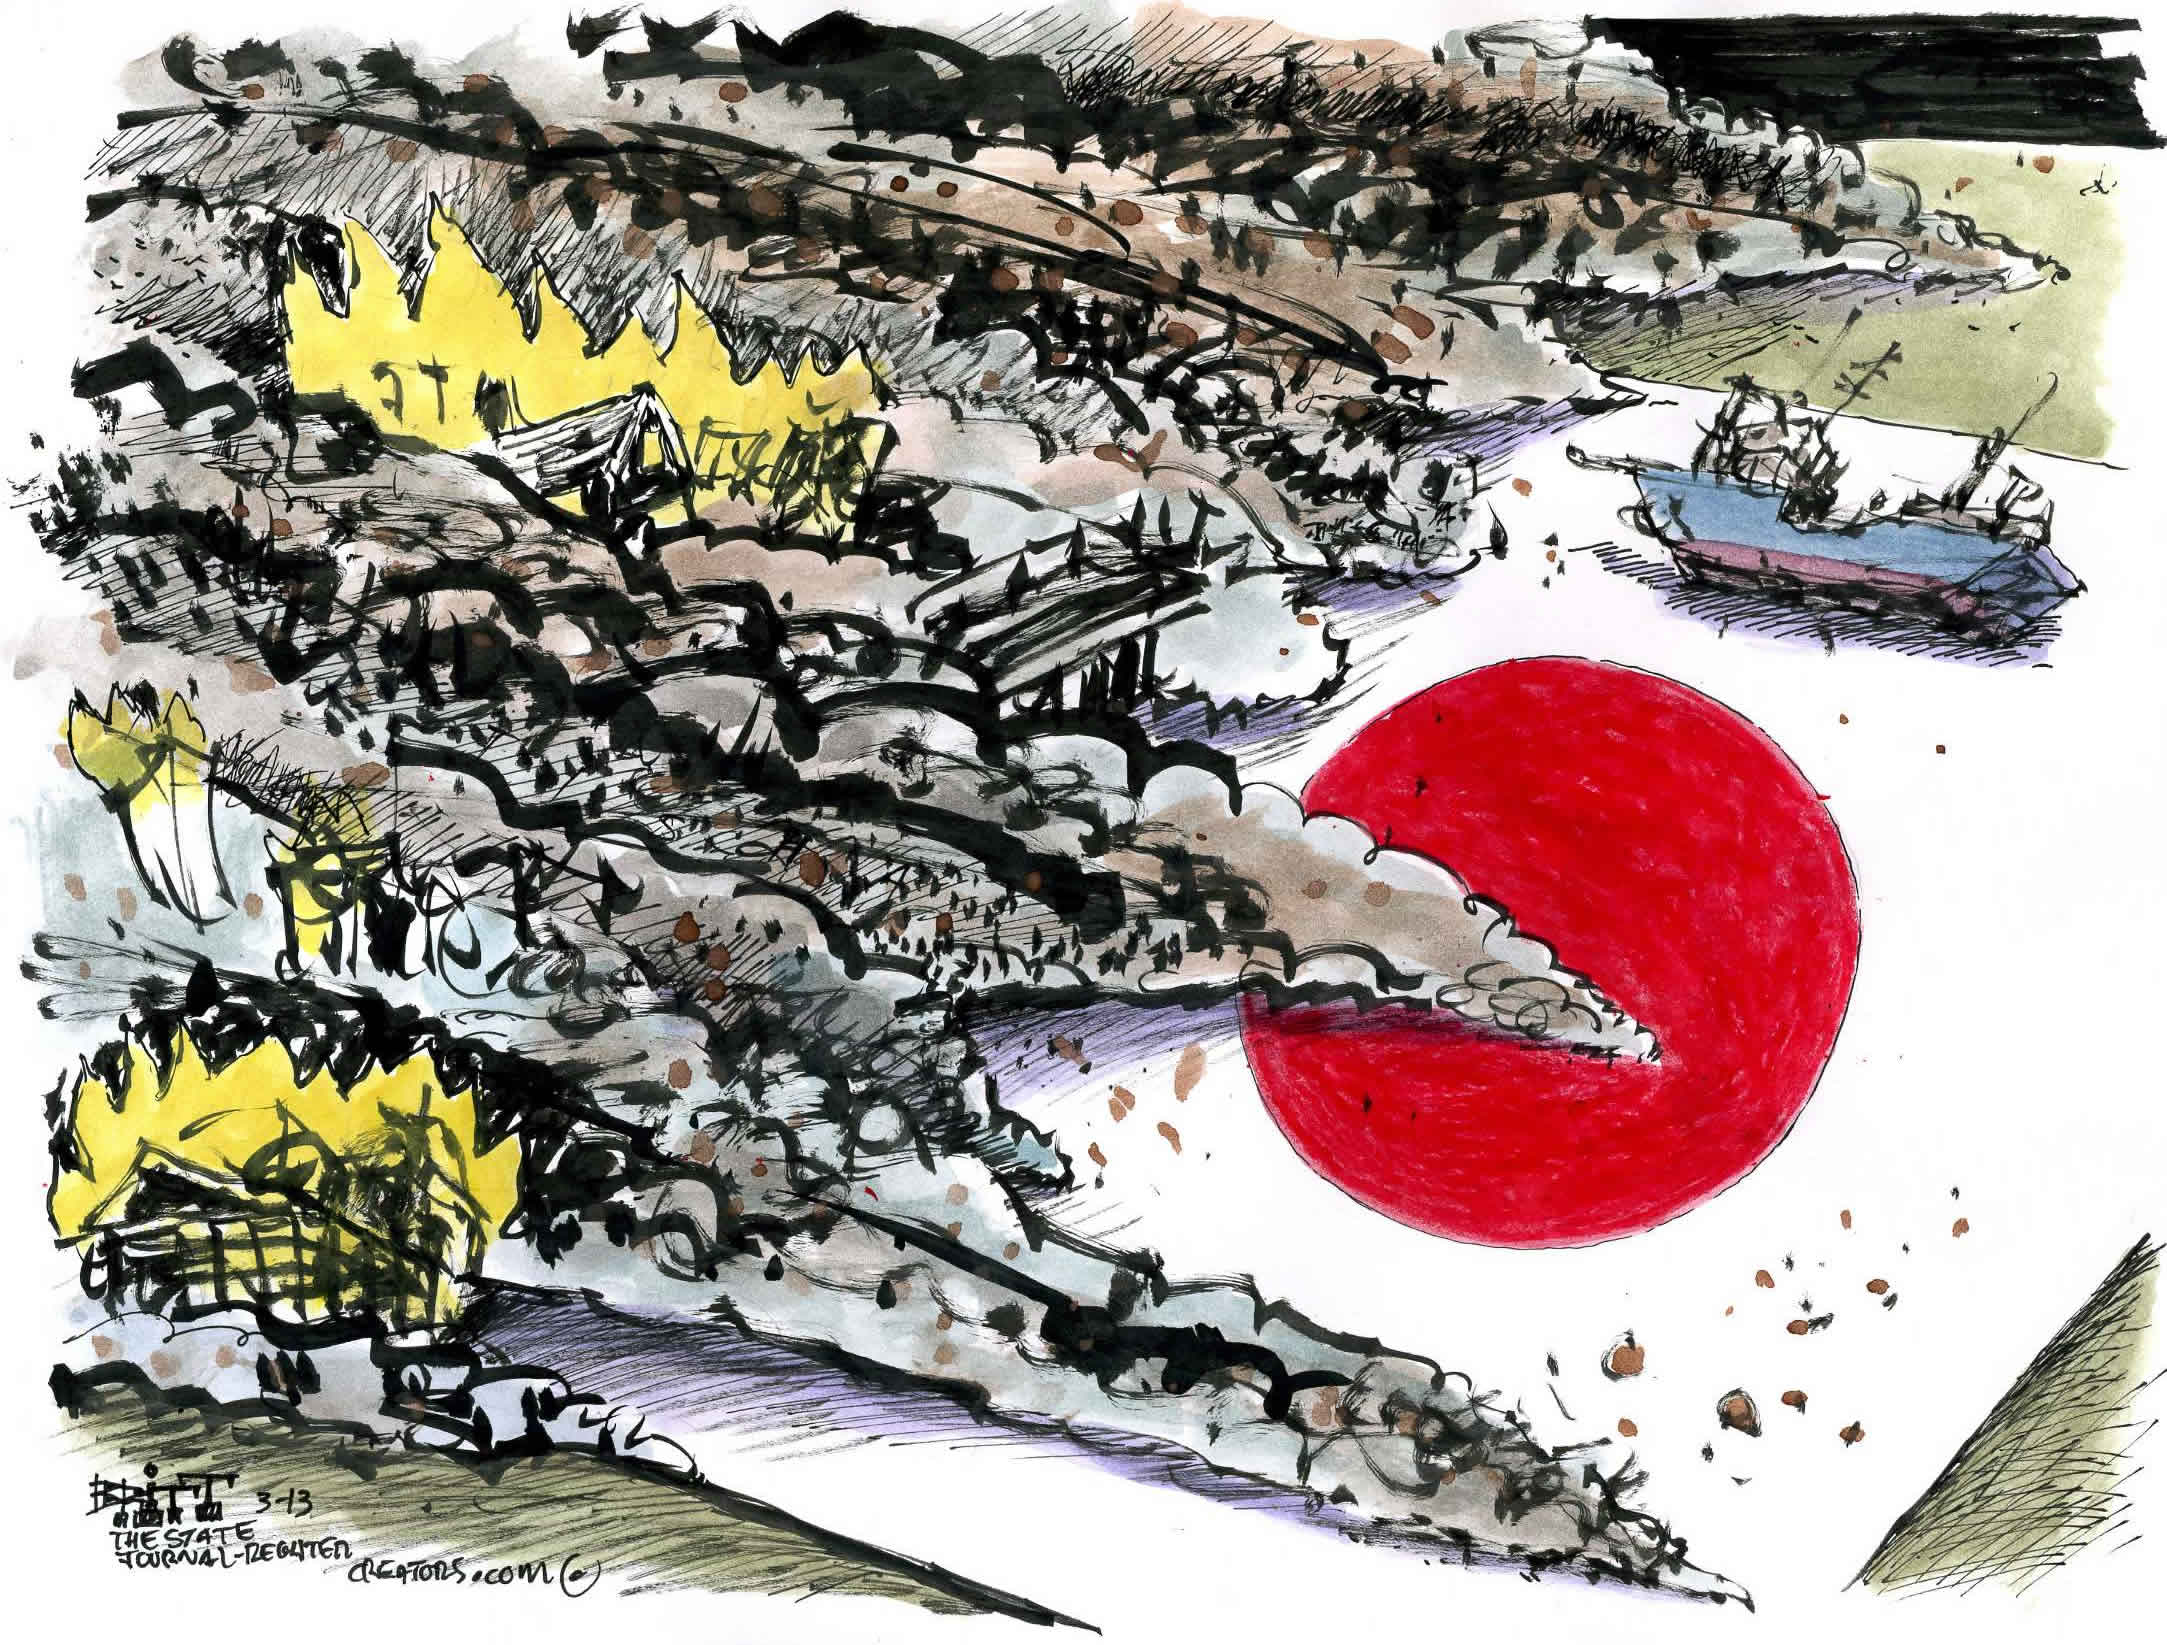 Britt cartoon: Earthquake in Japan